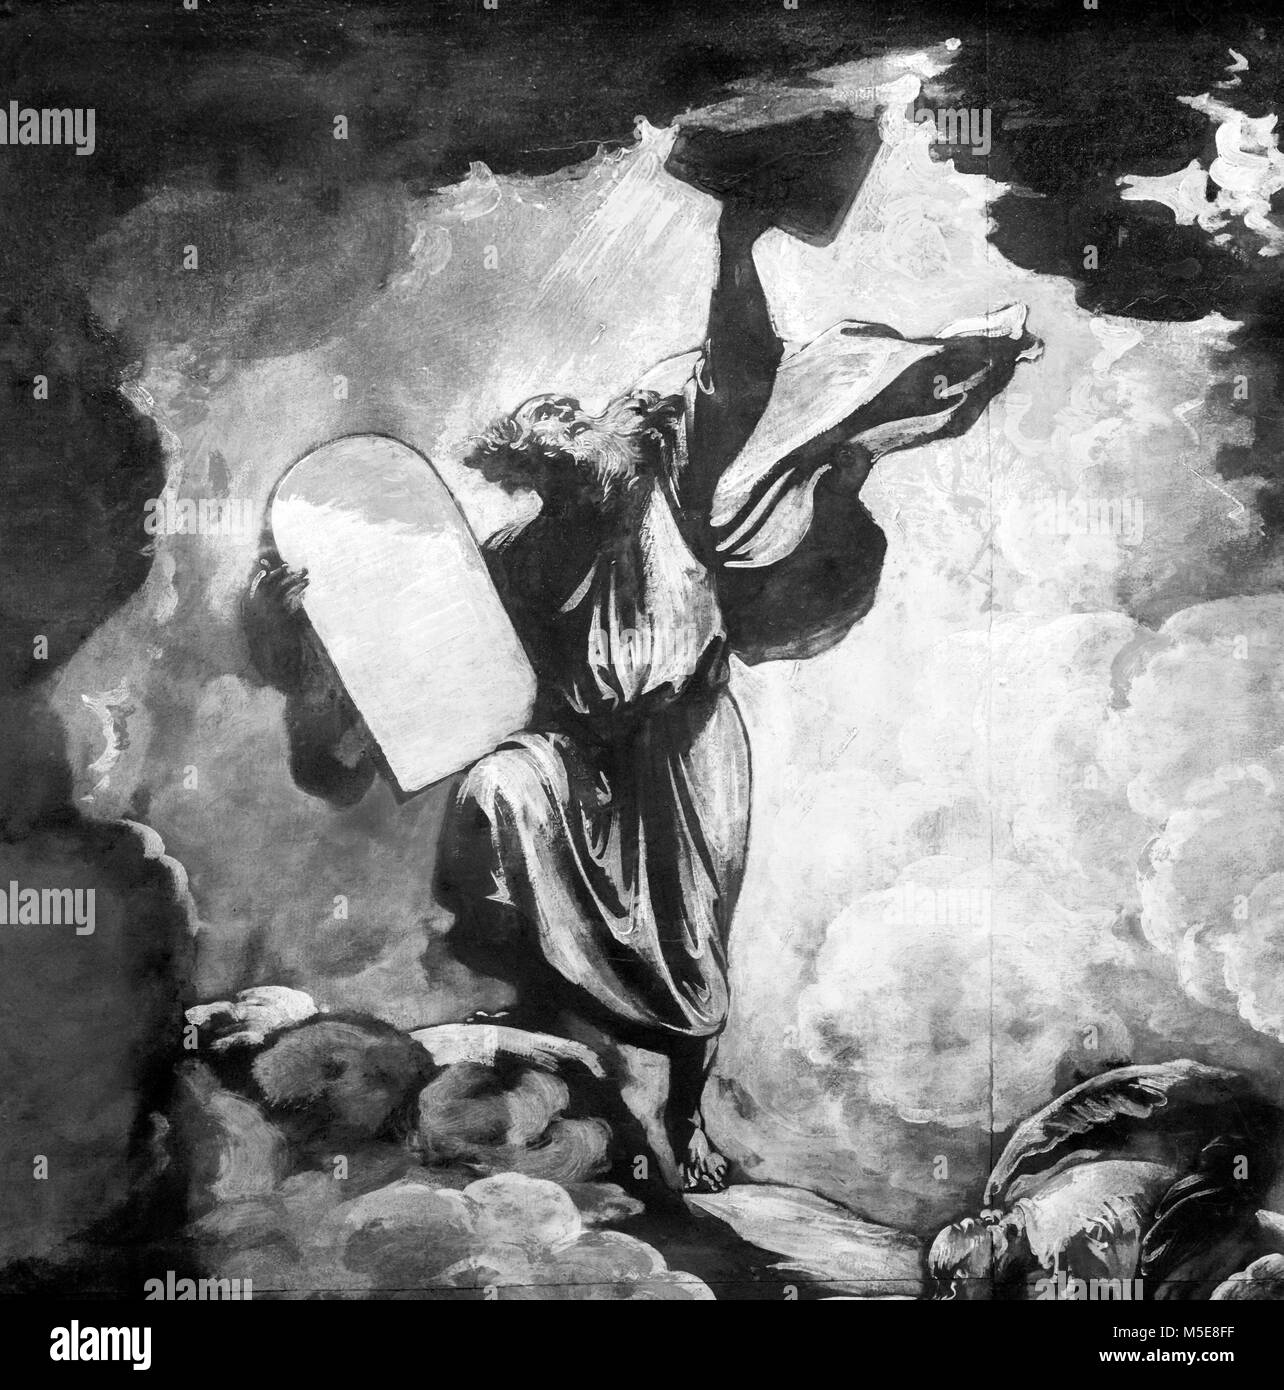 Moïse et les tables de la Loi par Benjamin West (1738-1820), huile sur papier, c.1780. C'est un croquis préparatoire pour une peinture plus montrant Moïse recevant les dix commandements de Dieu. Détail d'un grand centre de la peinture. Banque D'Images